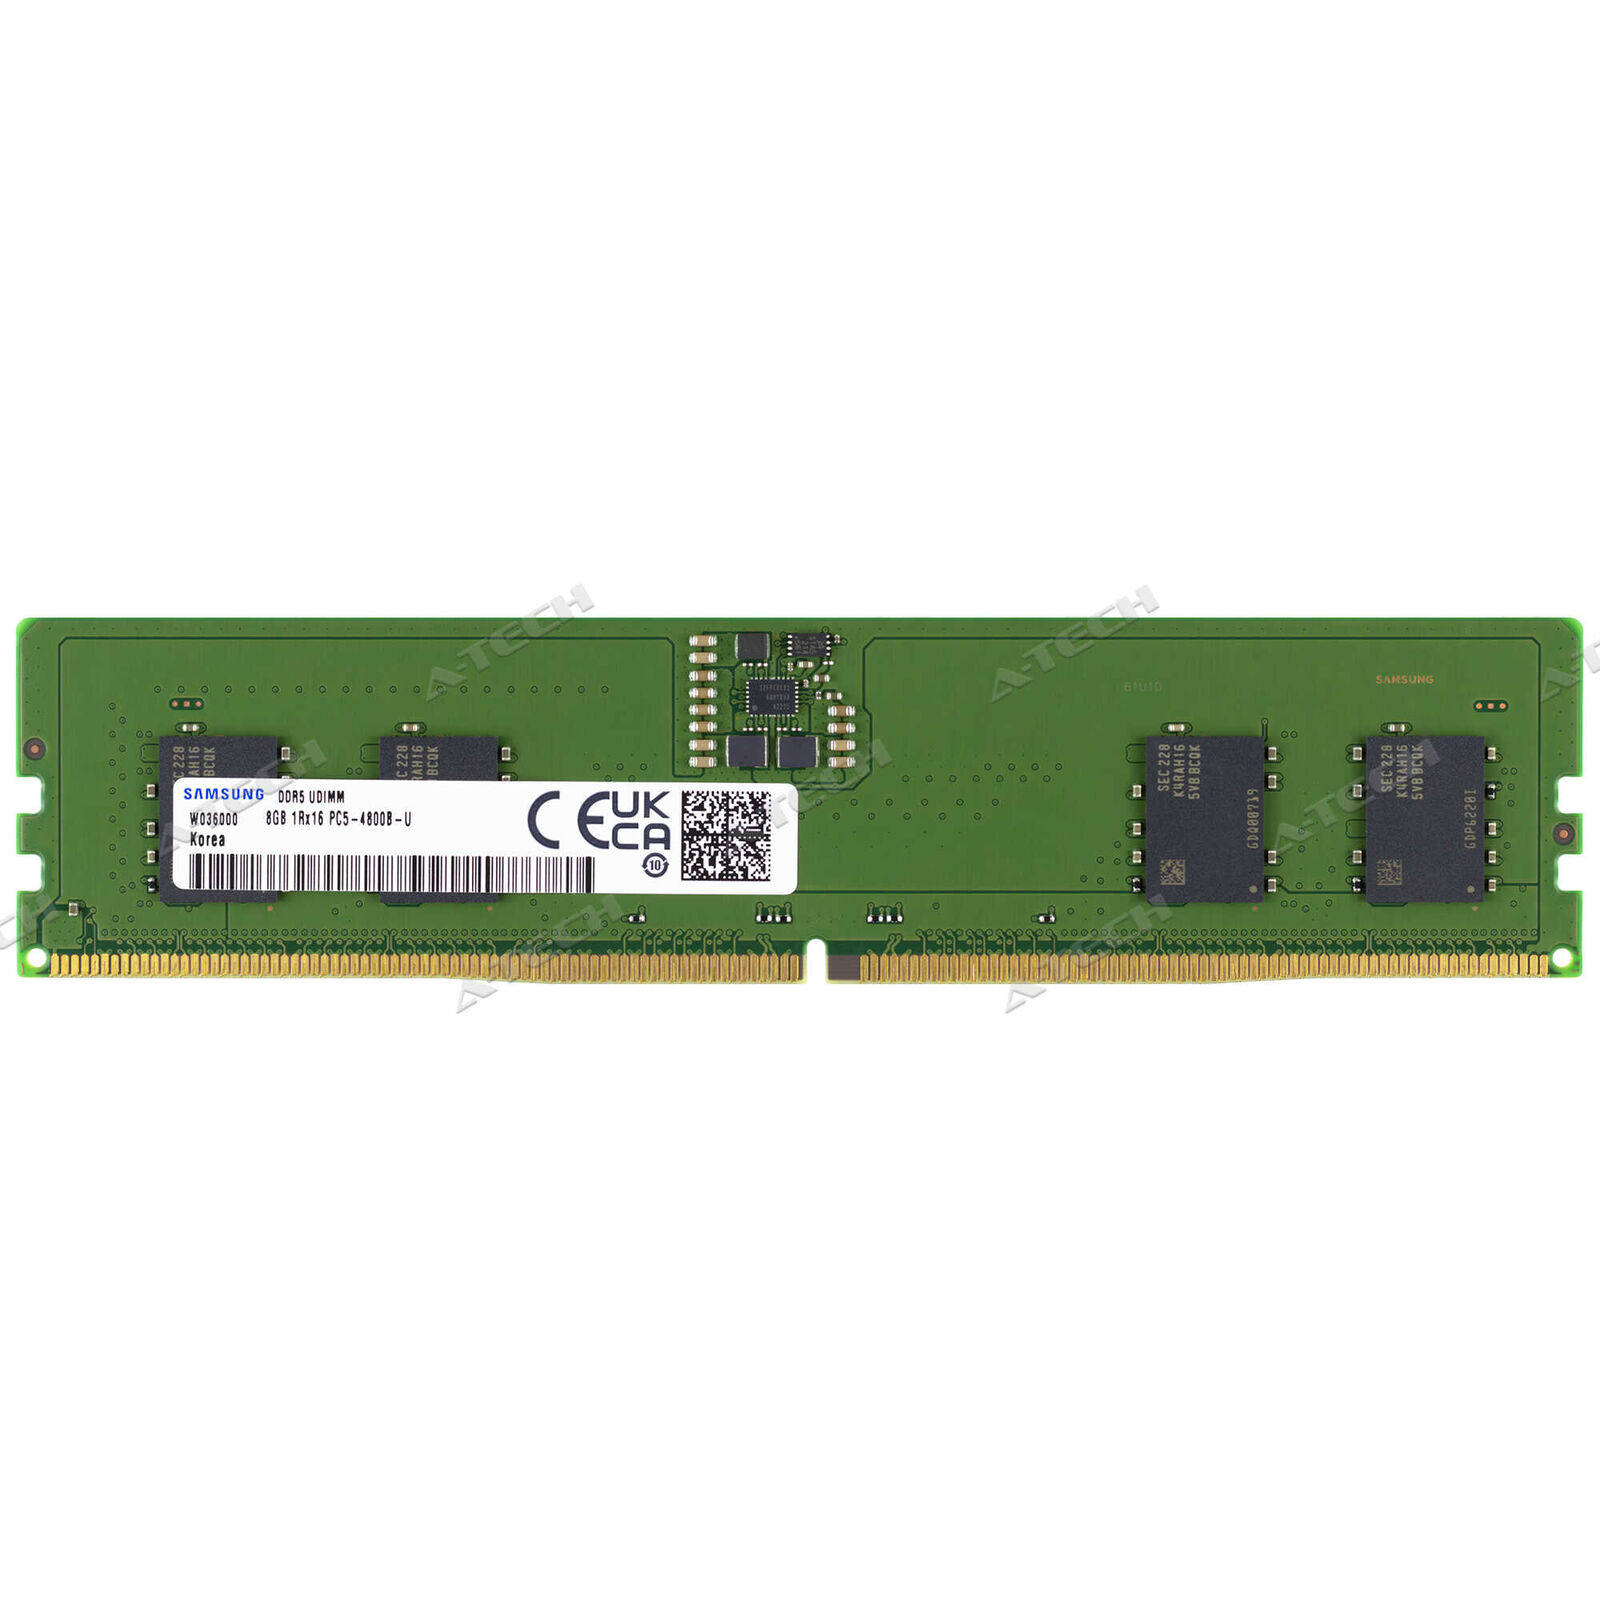 Samsung 8GB DDR5 DIMM M323R1GB4BB0-CQK M323R1GB4BB0-CQKOL Desktop Memory RAM